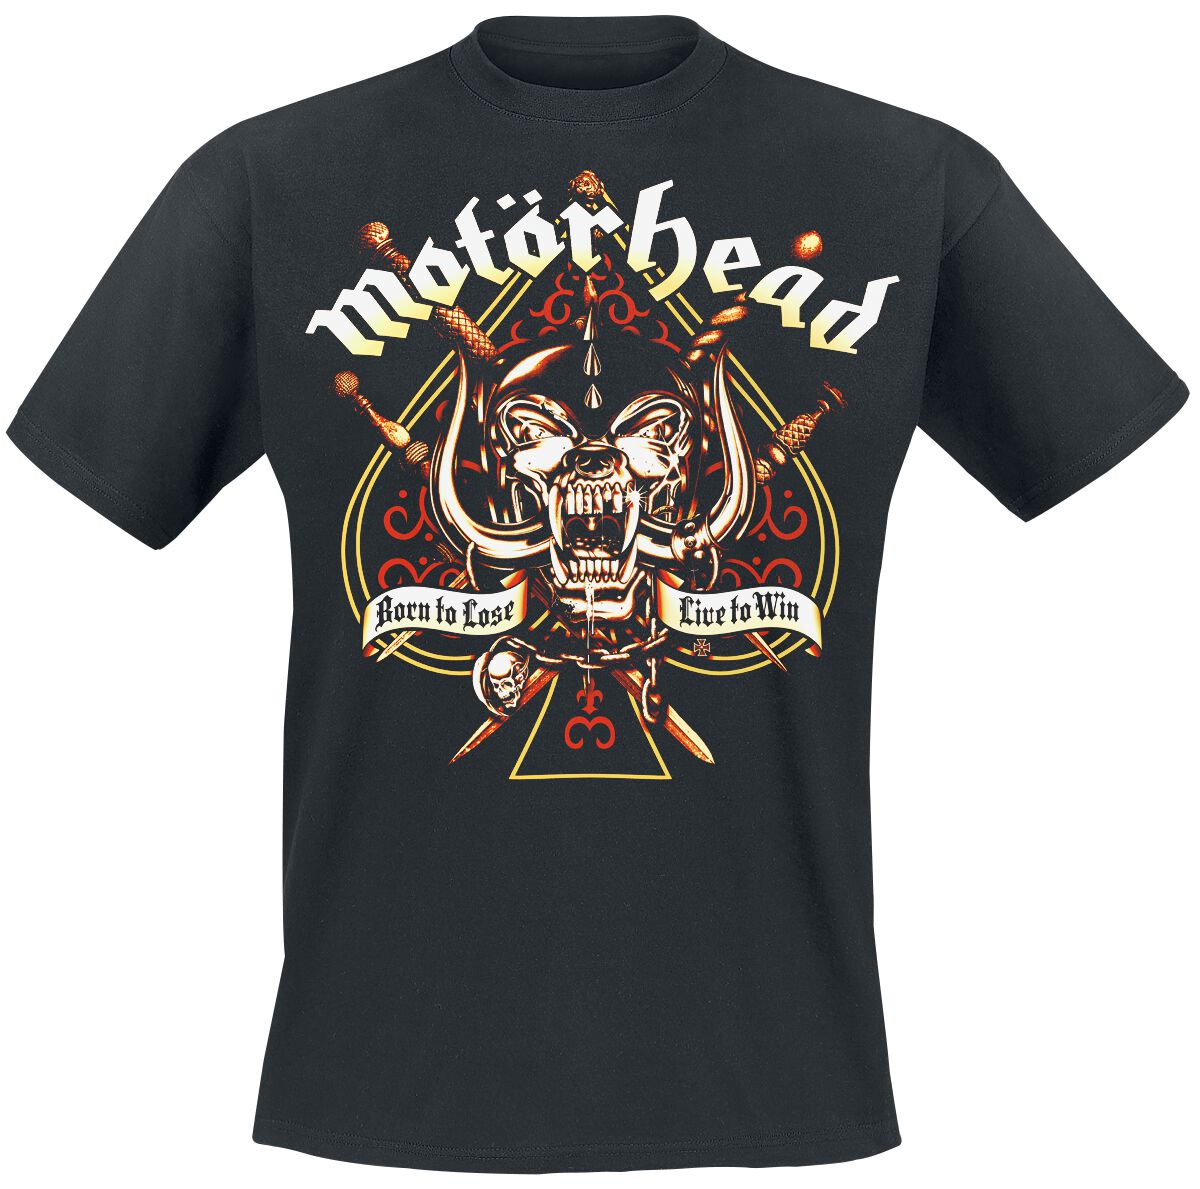 Motörhead T-Shirt - Sword Spade - L bis 4XL - für Männer - Größe XXL - schwarz  - Lizenziertes Merchandise!